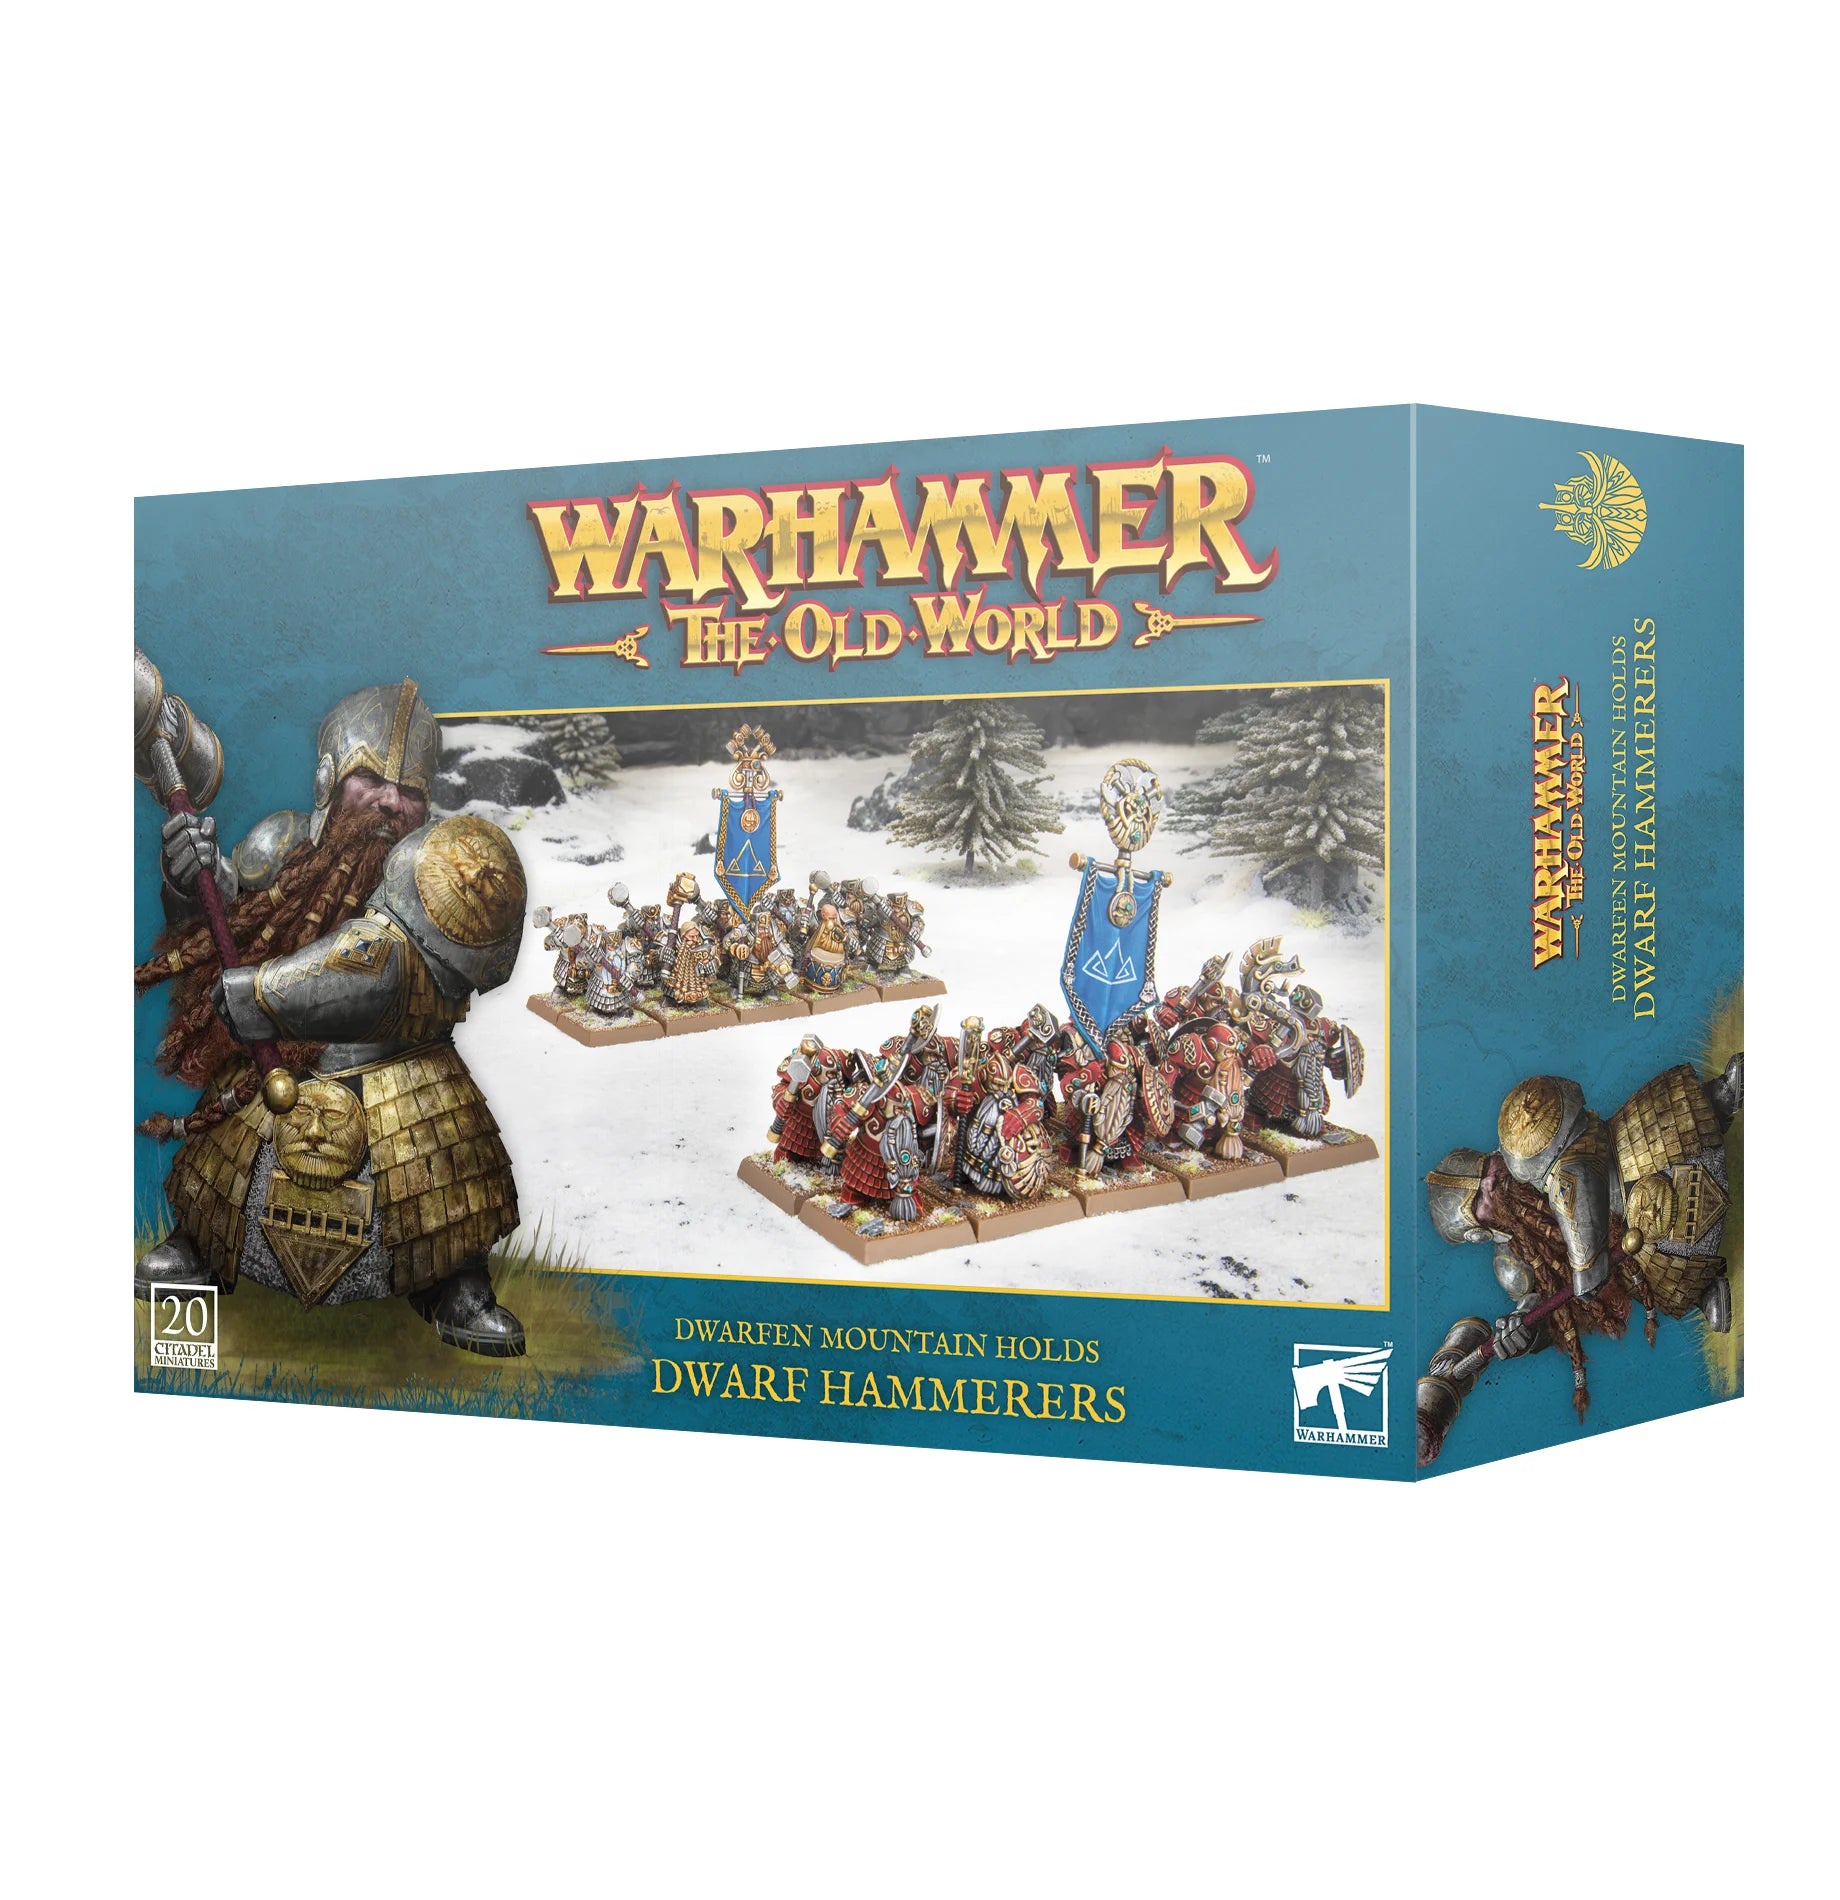 Warhammer The Old World: Dwarfen Mountain Holds Dwarf Hammerers